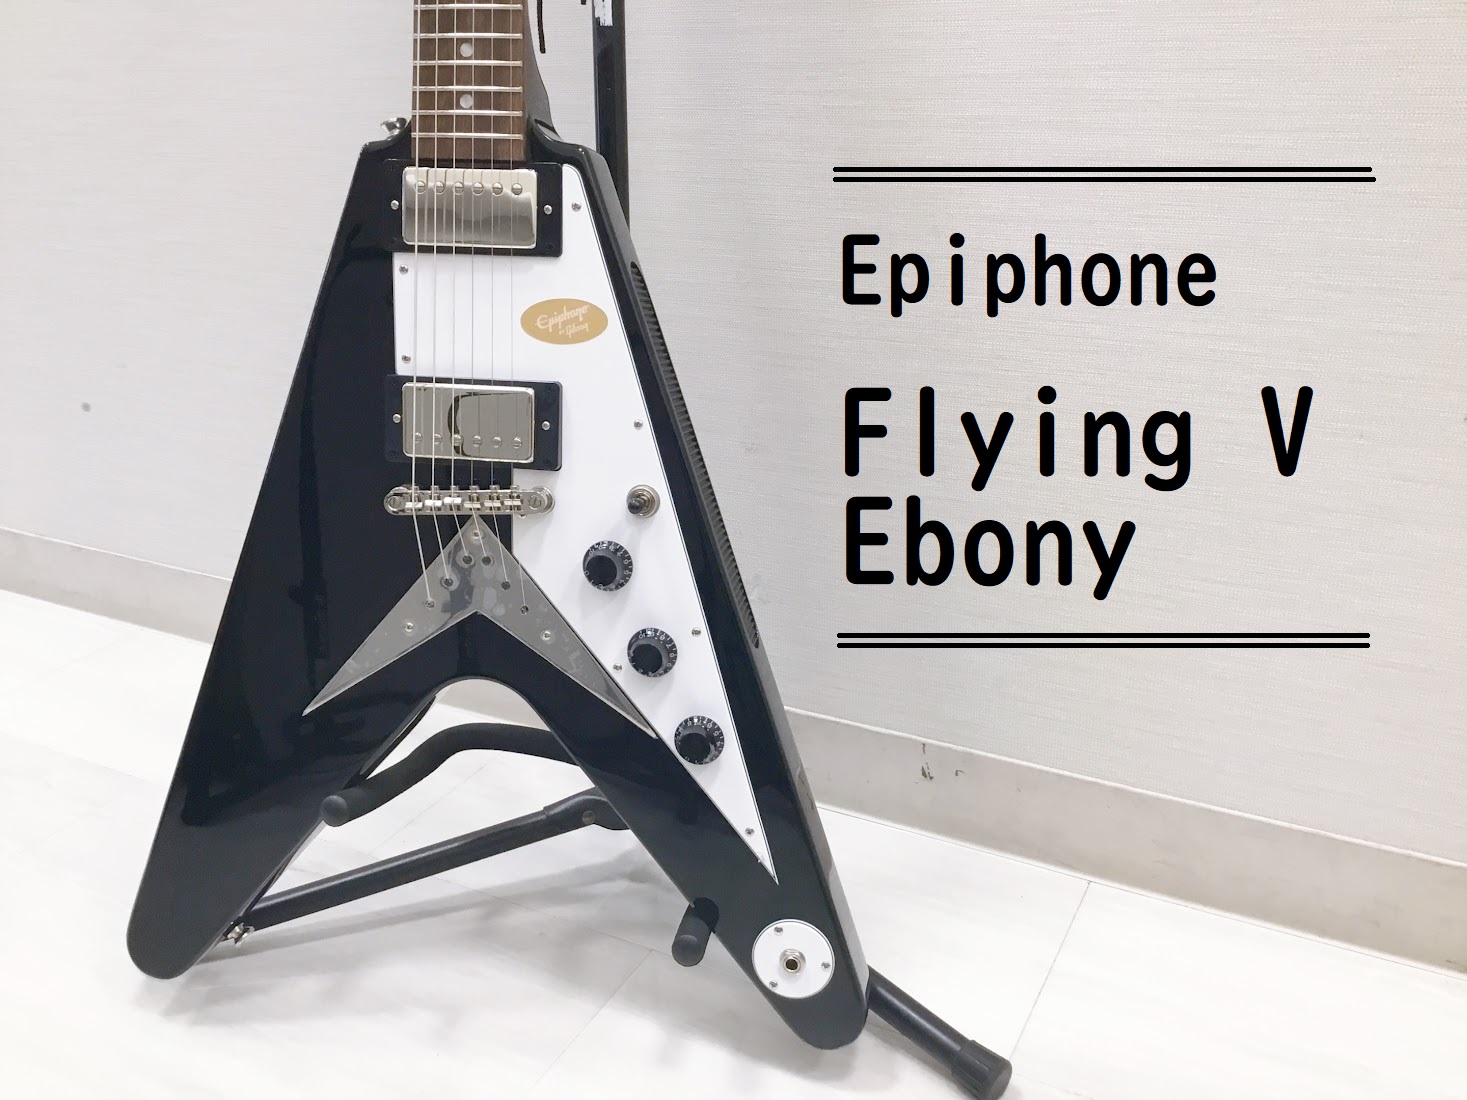 島村楽器大分店に、Epiphone(エピフォン)のエレキギター『Flying V Ebony』が入荷致しました！ エピフォン・フライングVは、ギブソンのオリジナルモデルに深く触発されスタートした新シリーズ、エピフォン“Inspired by Gibson”コレクションからの自信作です。 各種ご案内・ […]